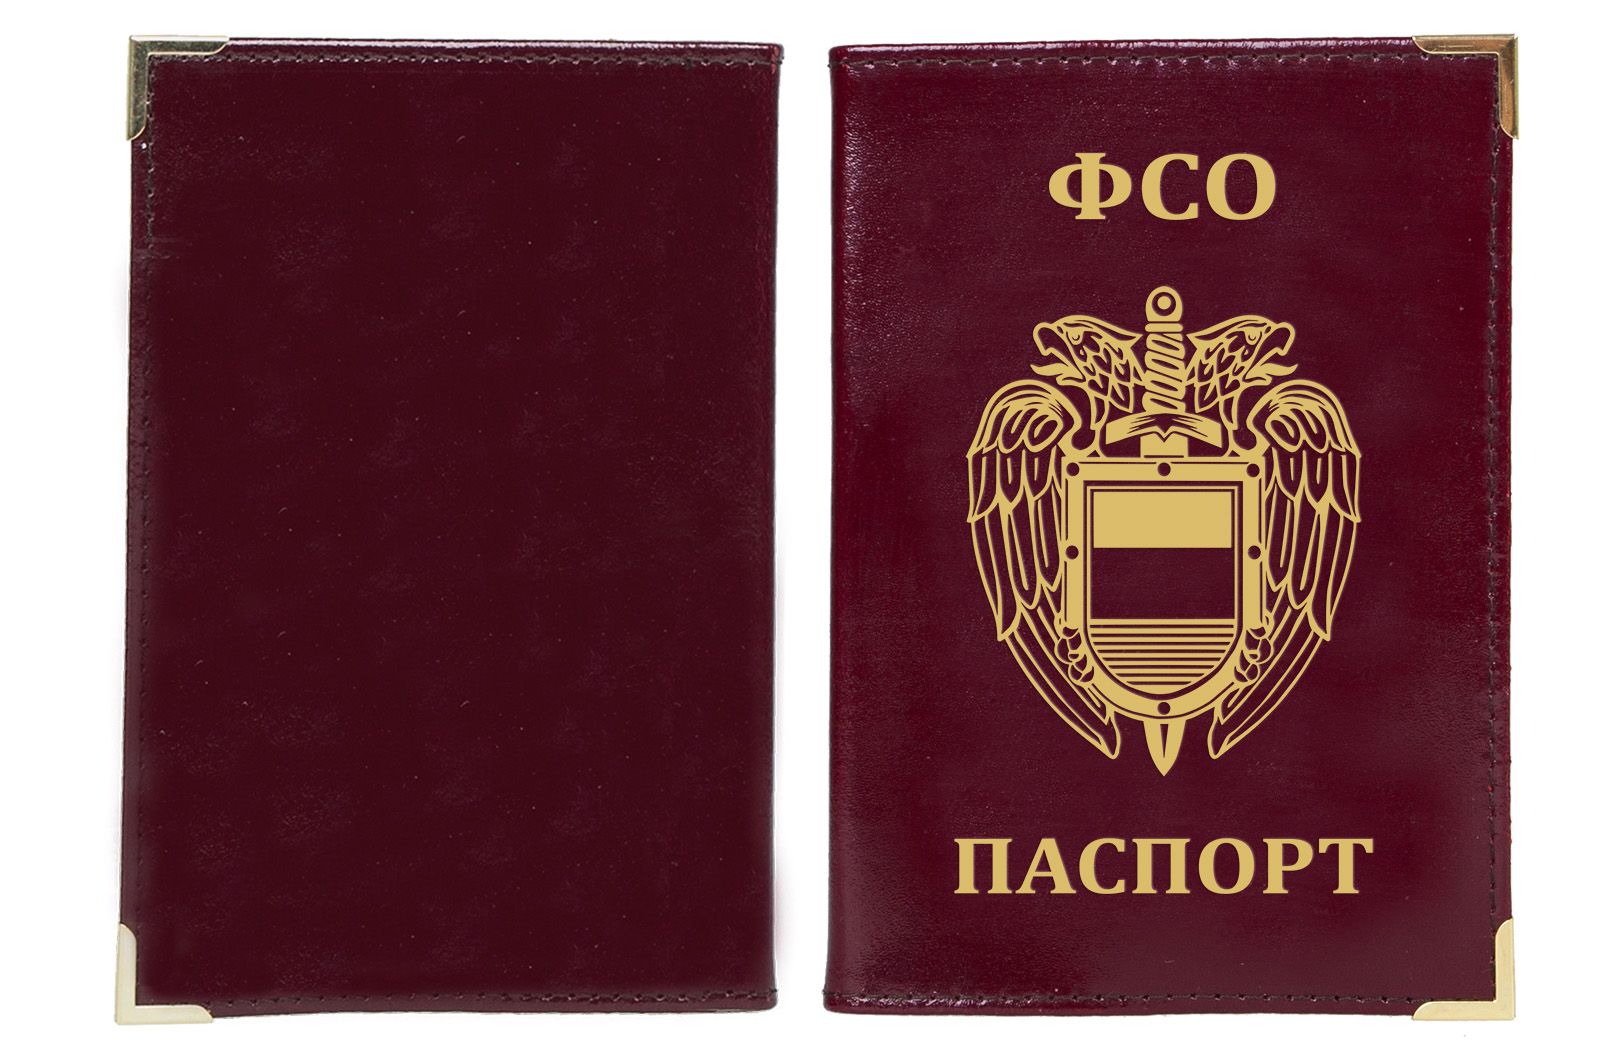 Обложка на паспорт с эмблемой ФСО 